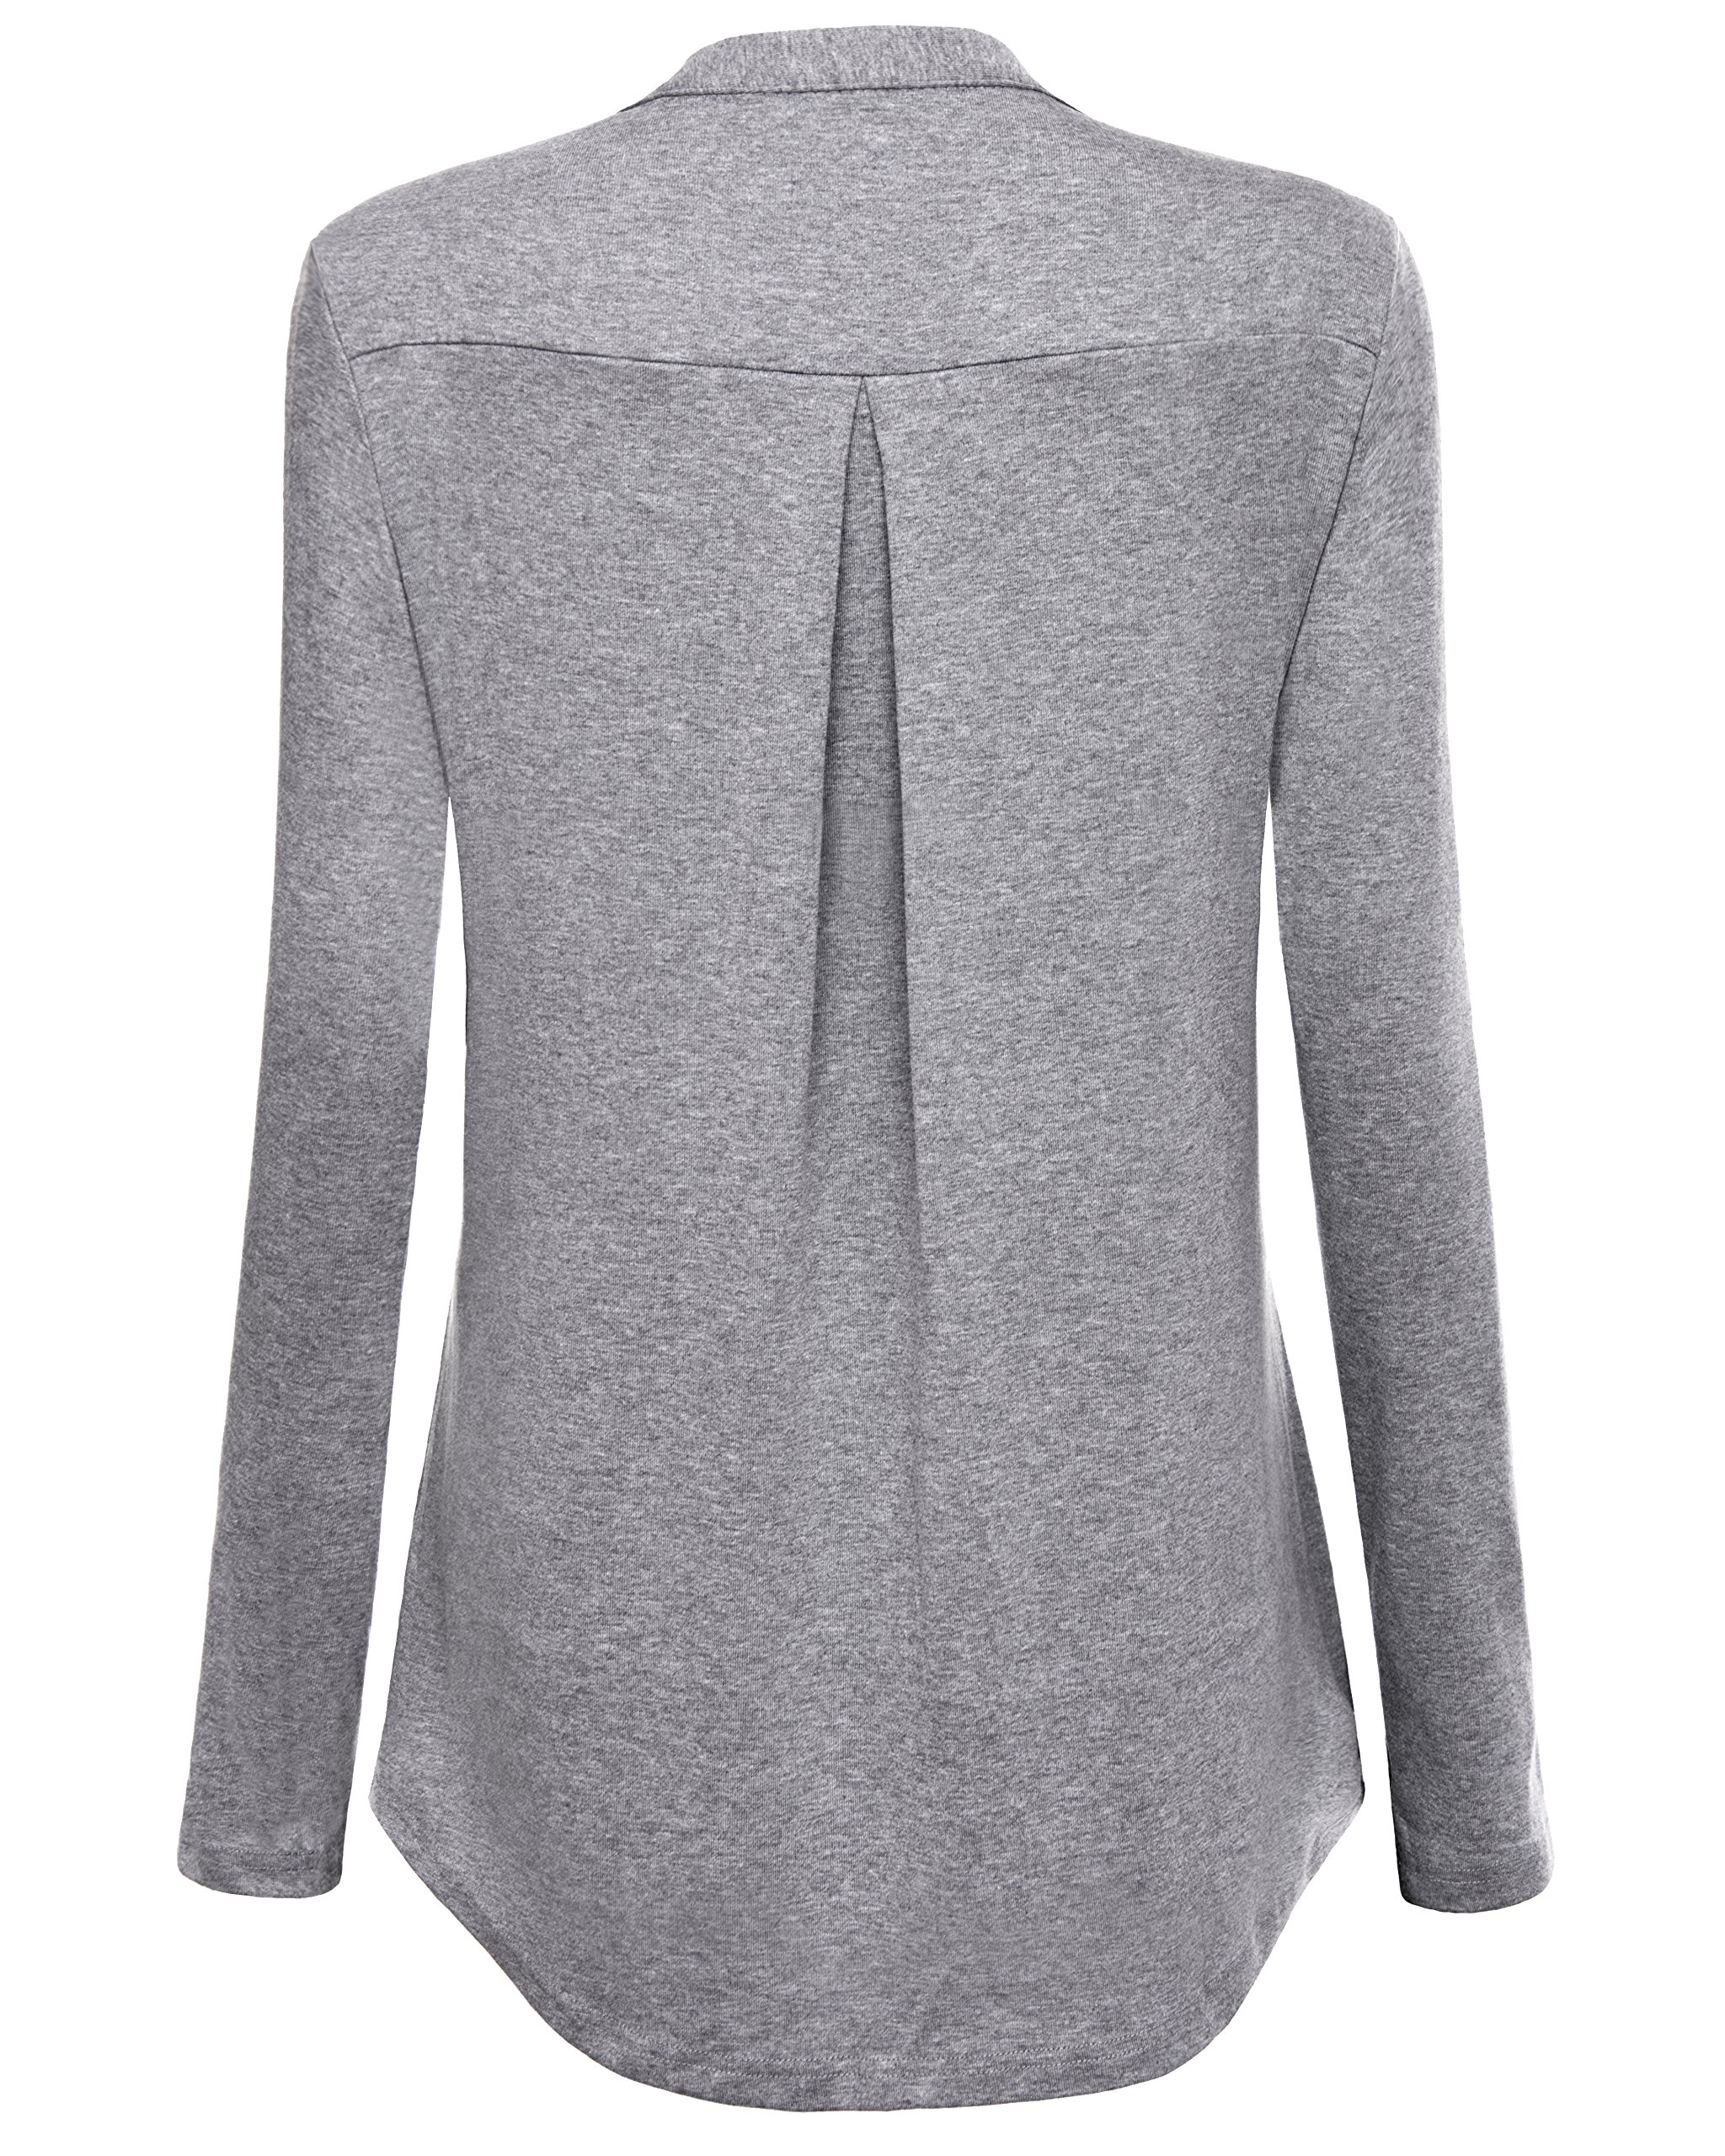 YaYa Bay Women's 3/4 Sleeve Blouse Zipper Henley Shirt Notch V Neck Tunic Tops to Leggings Casual Formal Top